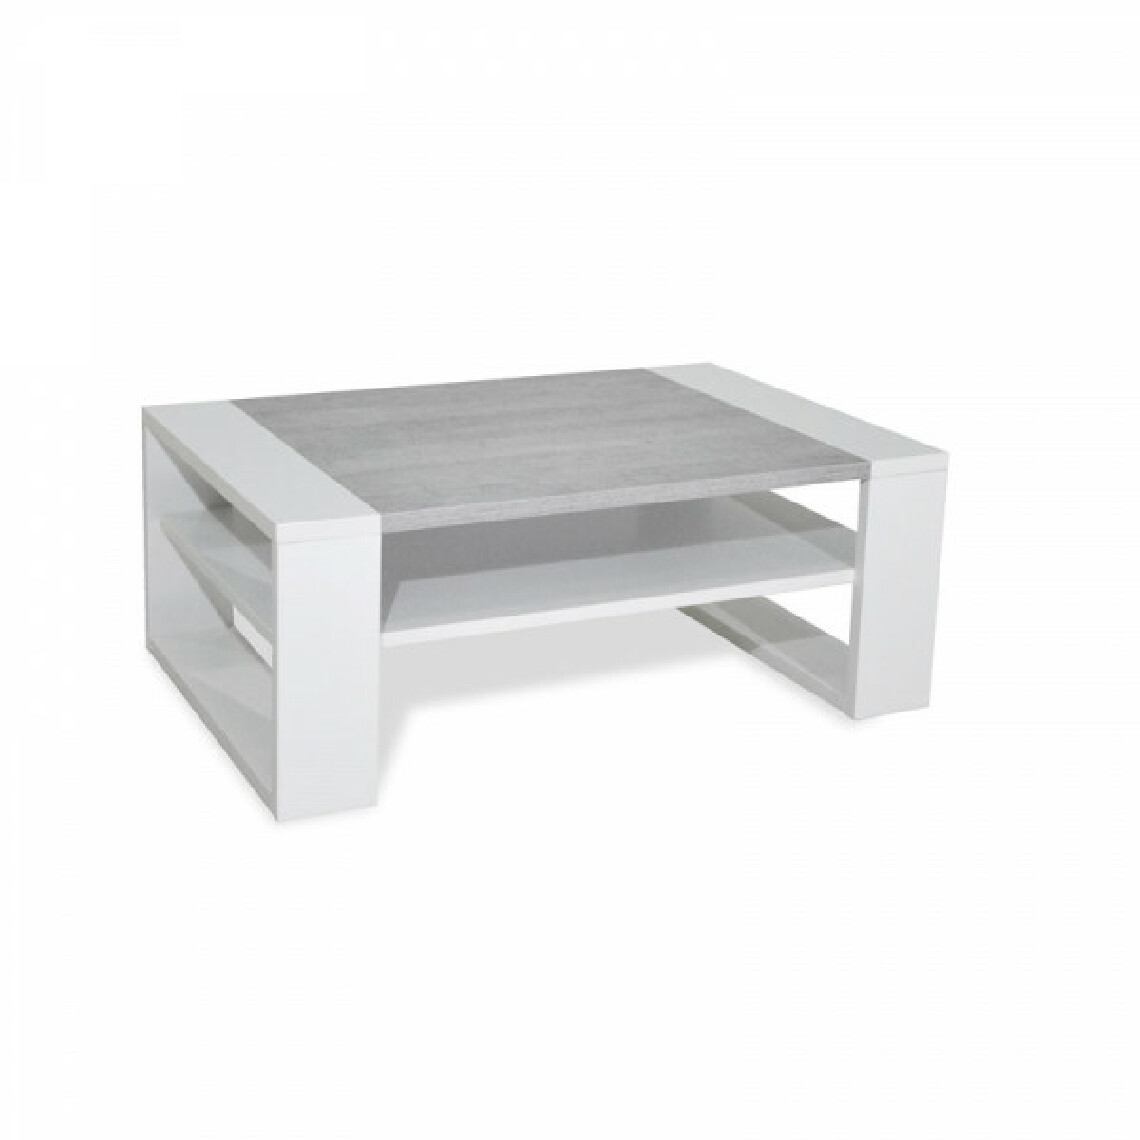 Dansmamaison - Table basse Blanc/Gris - PORTO - L 90 x l 60 x H 35.5 cm - Tables basses